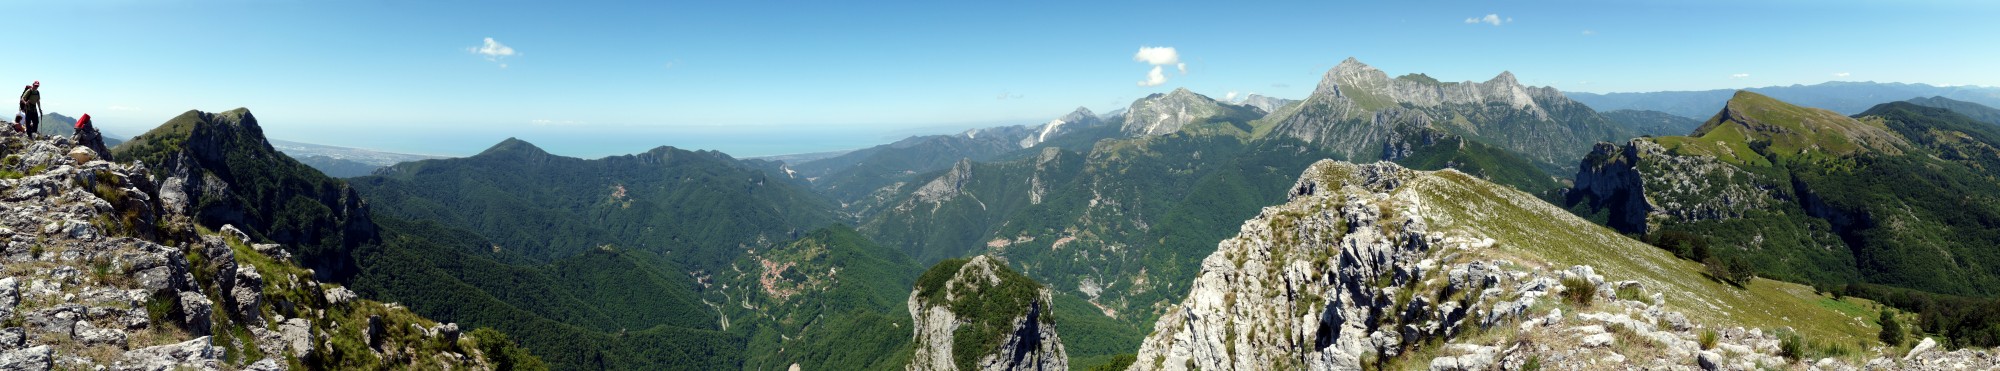 Alpi Apuane Panorama